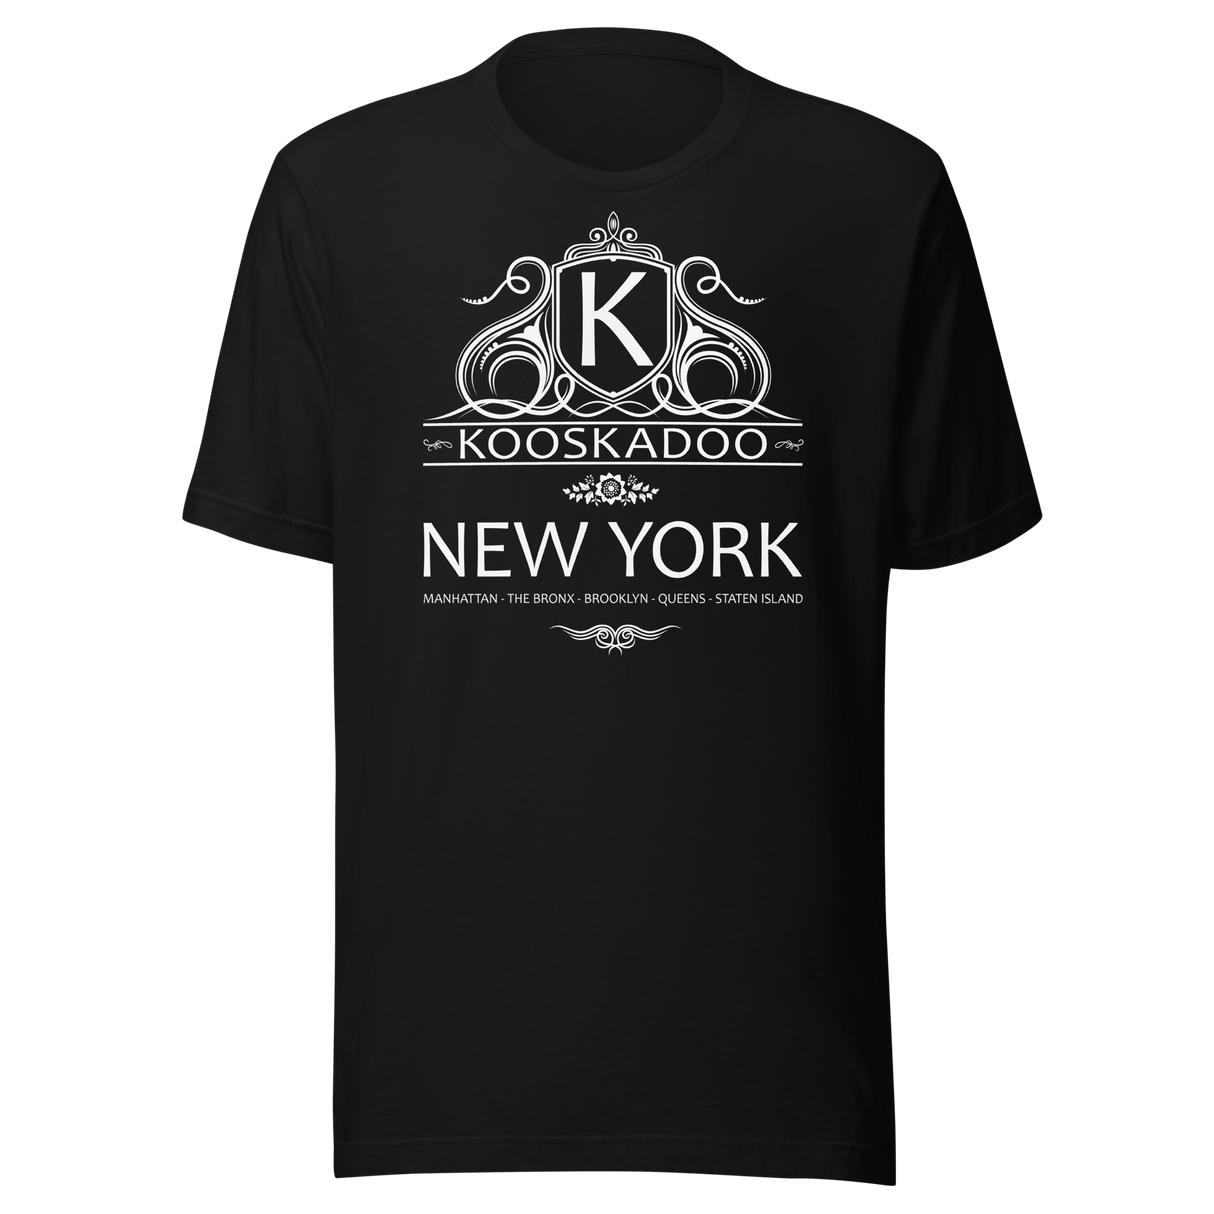 kooskadoo-new-york-new-york-tee-big-apple-t-shirt-nyc-tee-t-shirt-tee#color_black